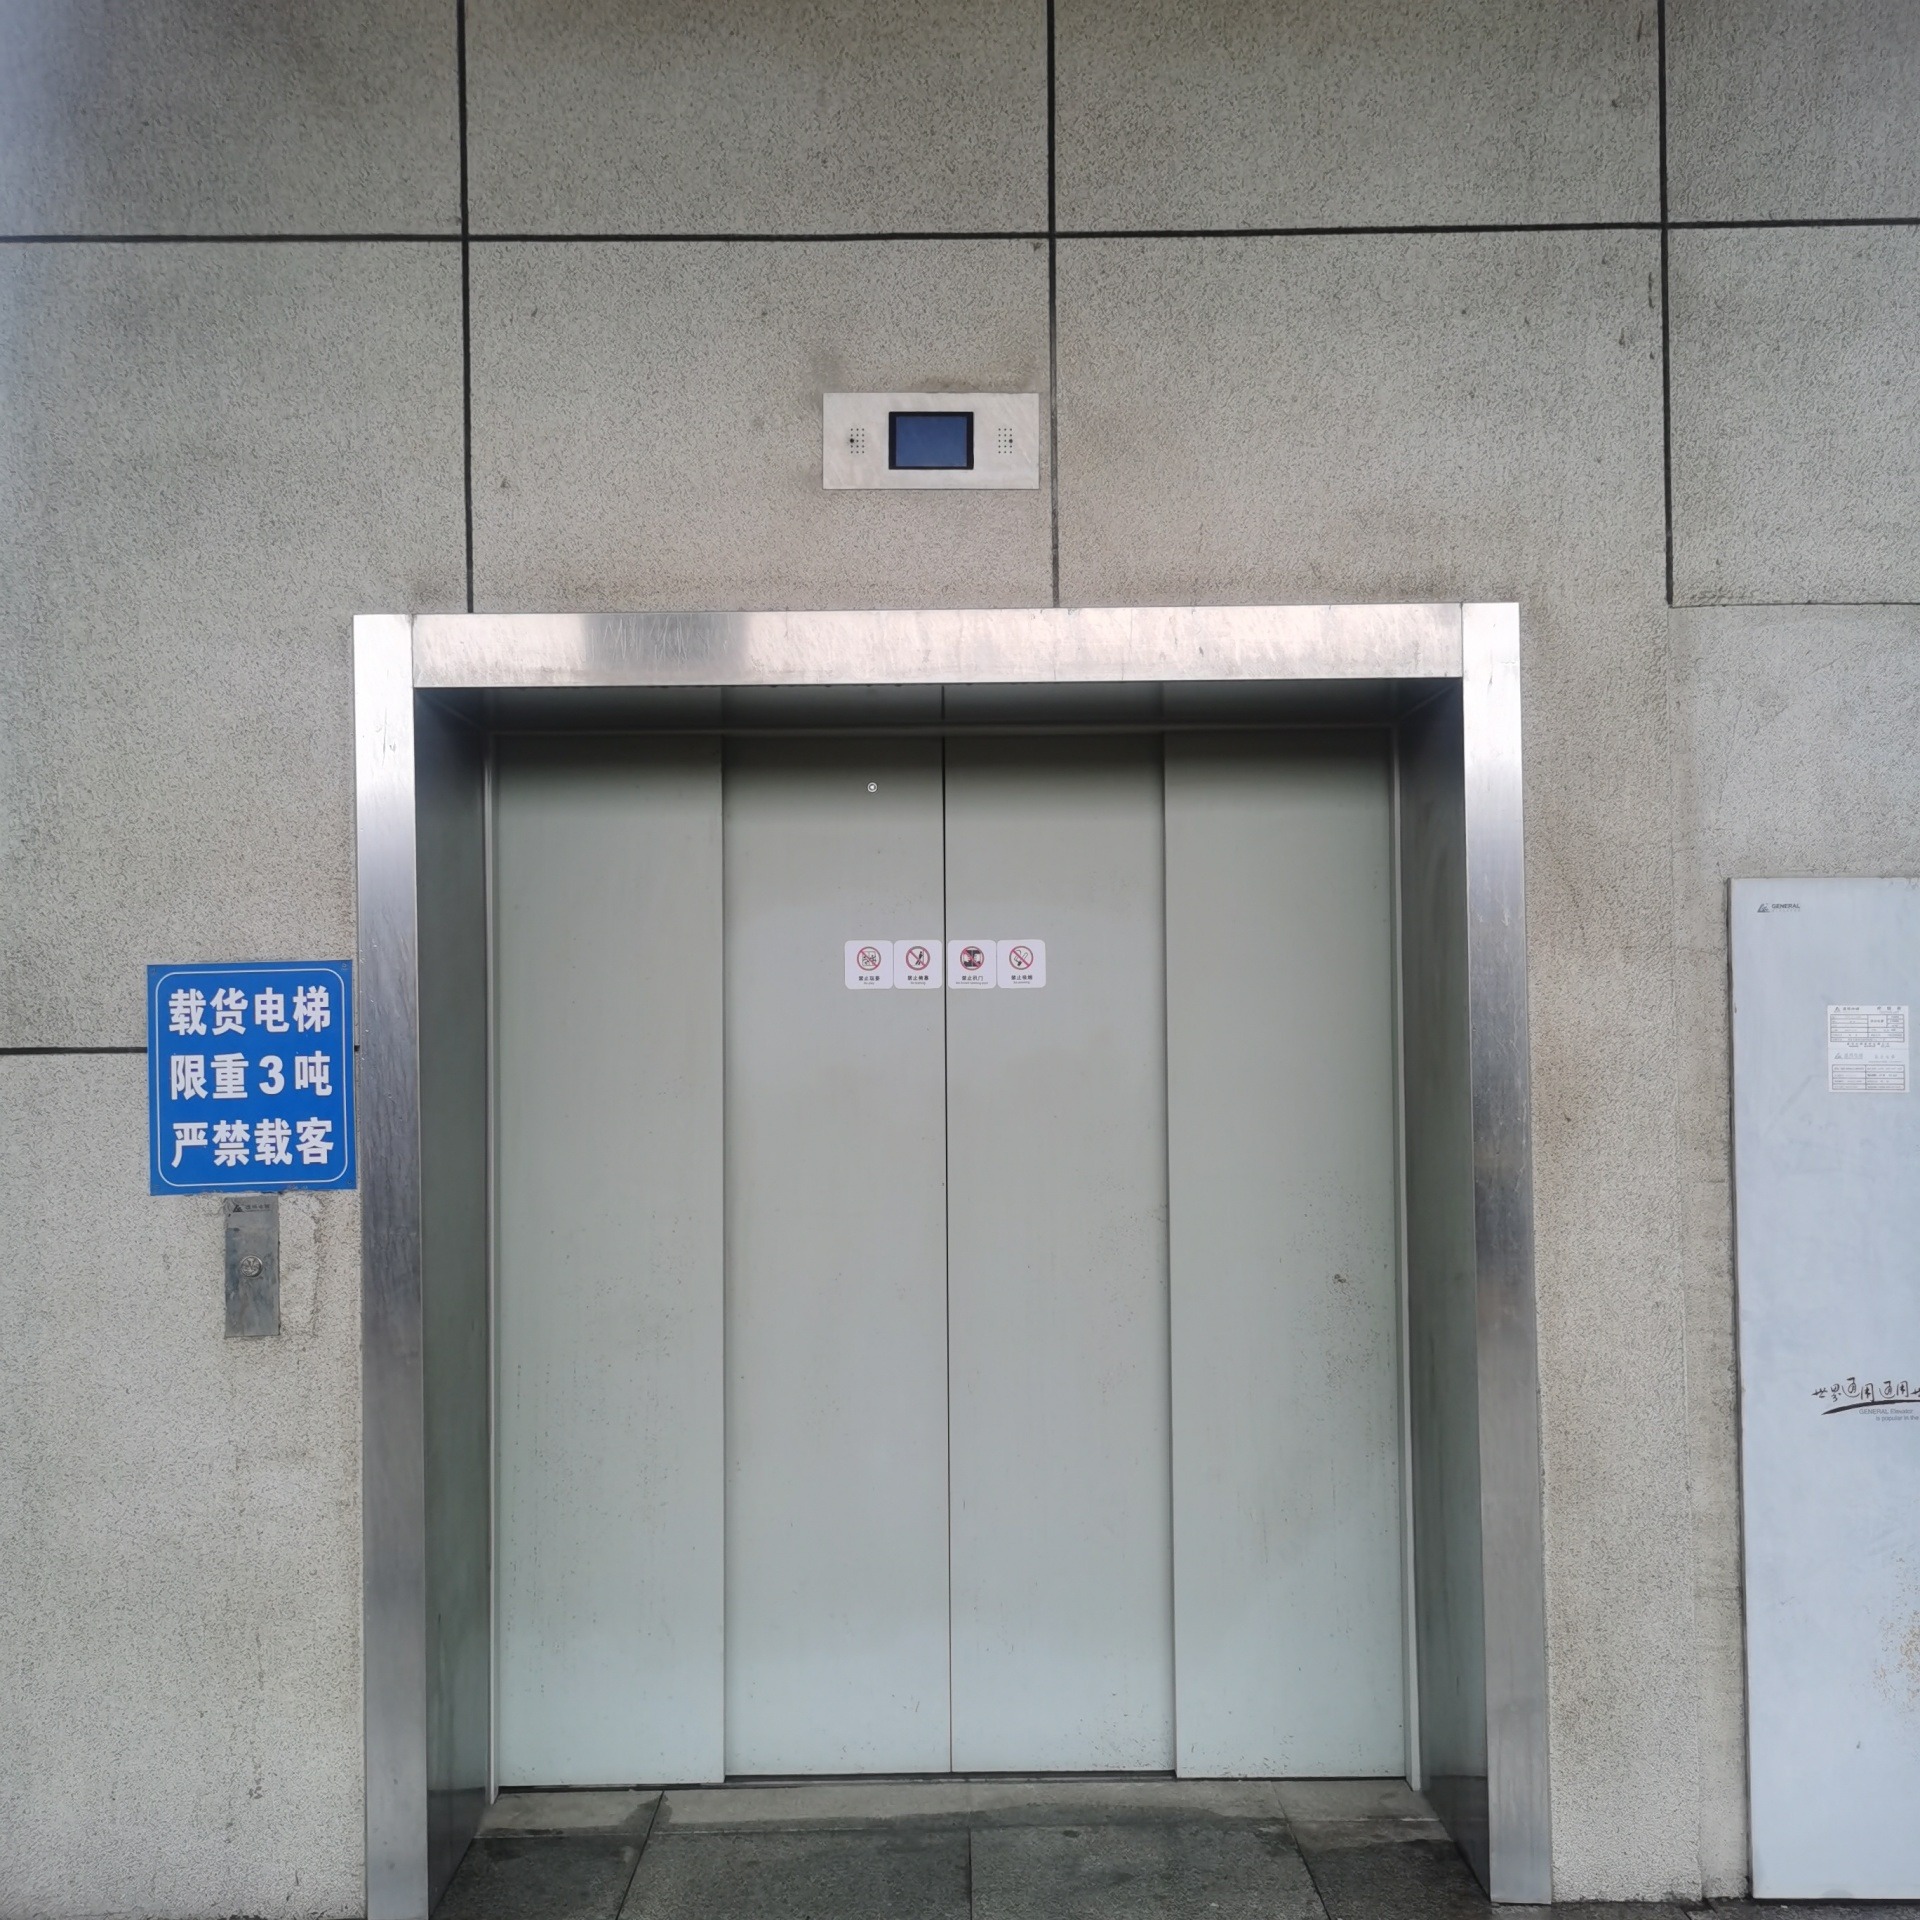 三洋电梯 货梯 乘客电梯 病床电梯 观光梯 别墅电梯（家用电梯） 扶梯 加装电梯